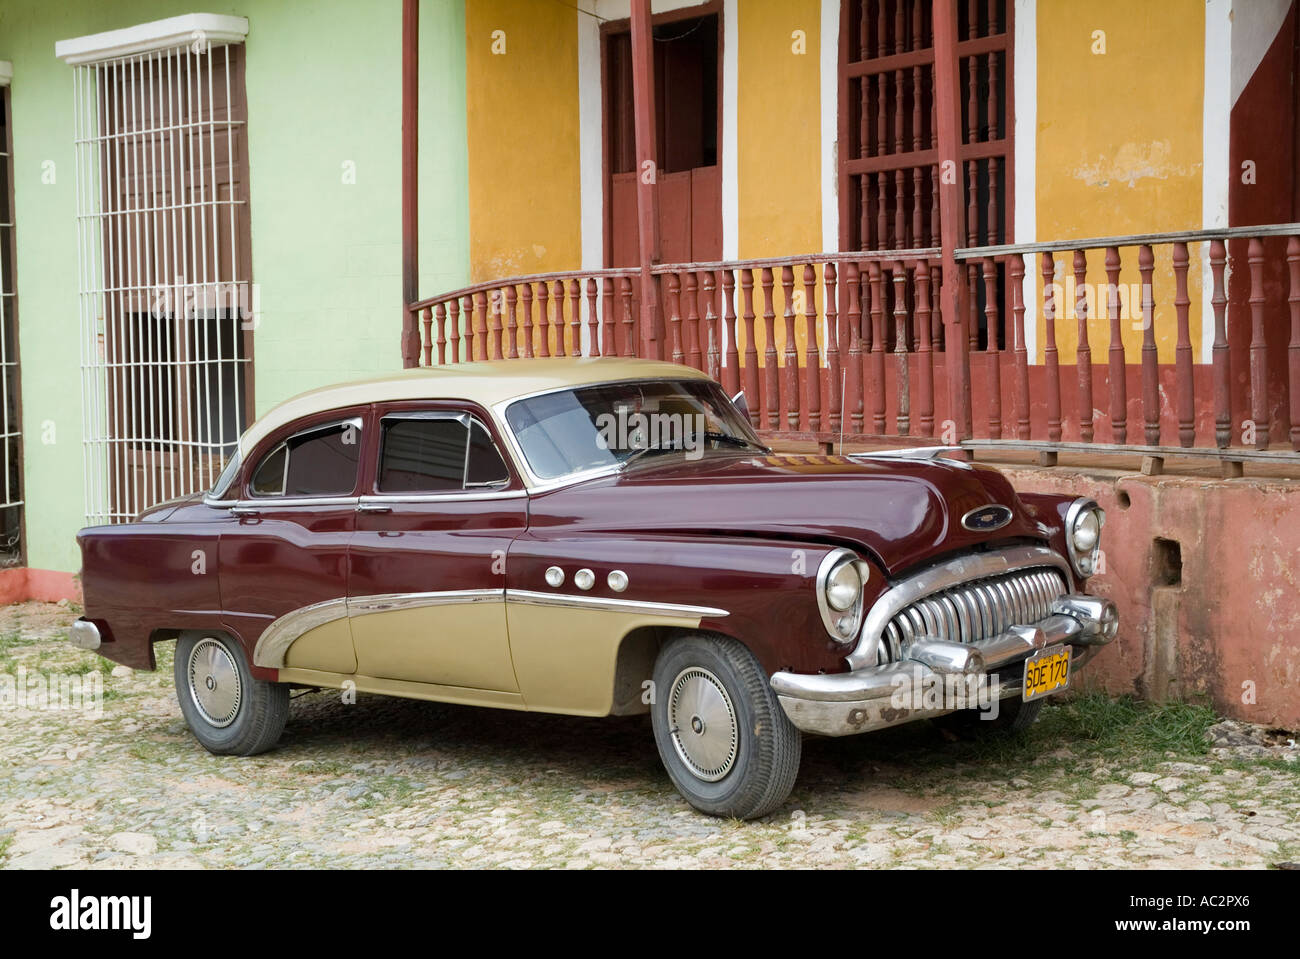 Coches clásicos Americanos, Trinidad, Sancti Spíritus, Cuba. Foto de stock